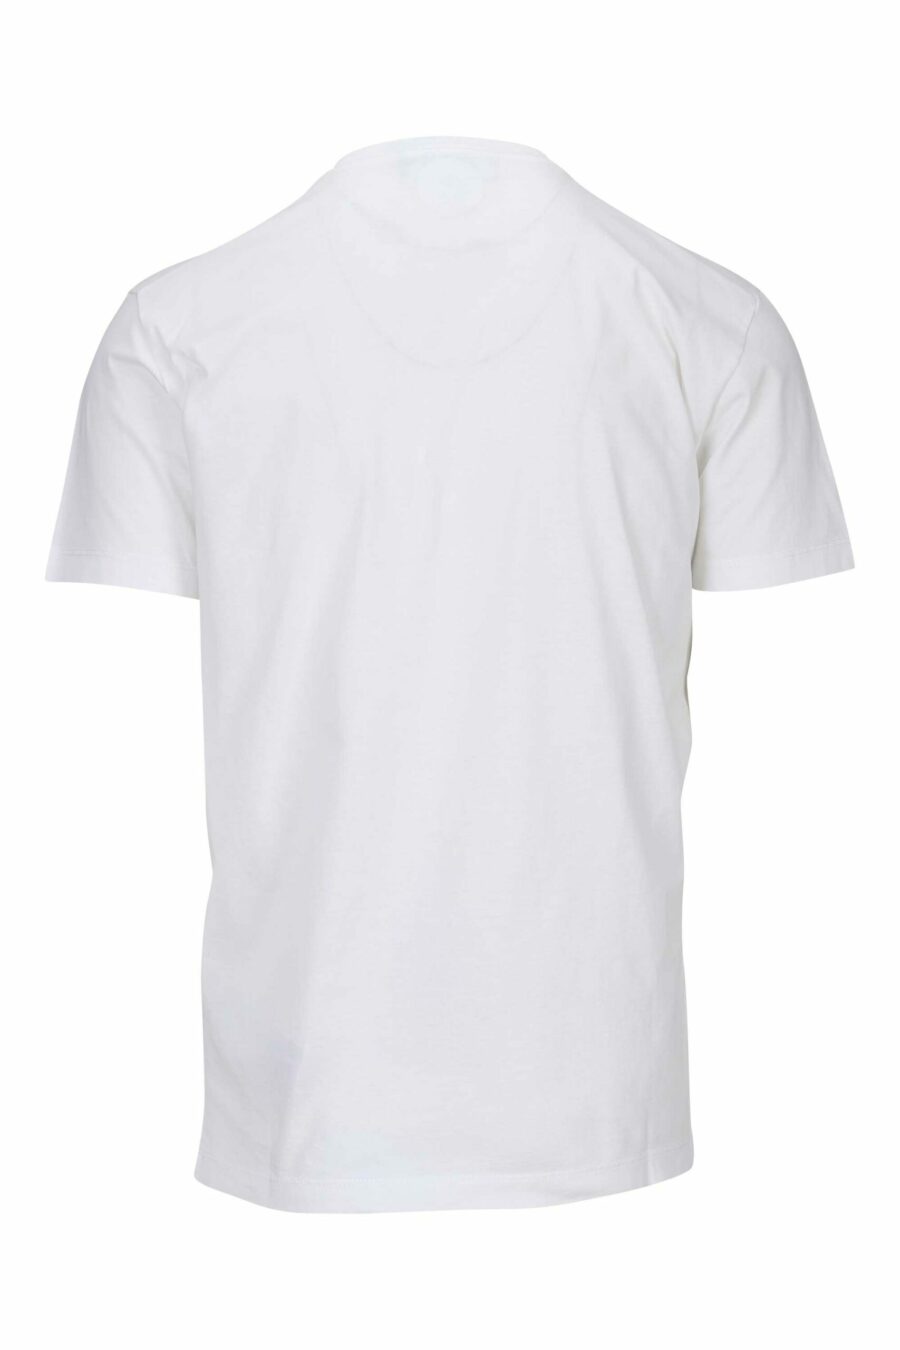 Camiseta blanca con sellos logo "icon" - 8054148362676 1 scaled